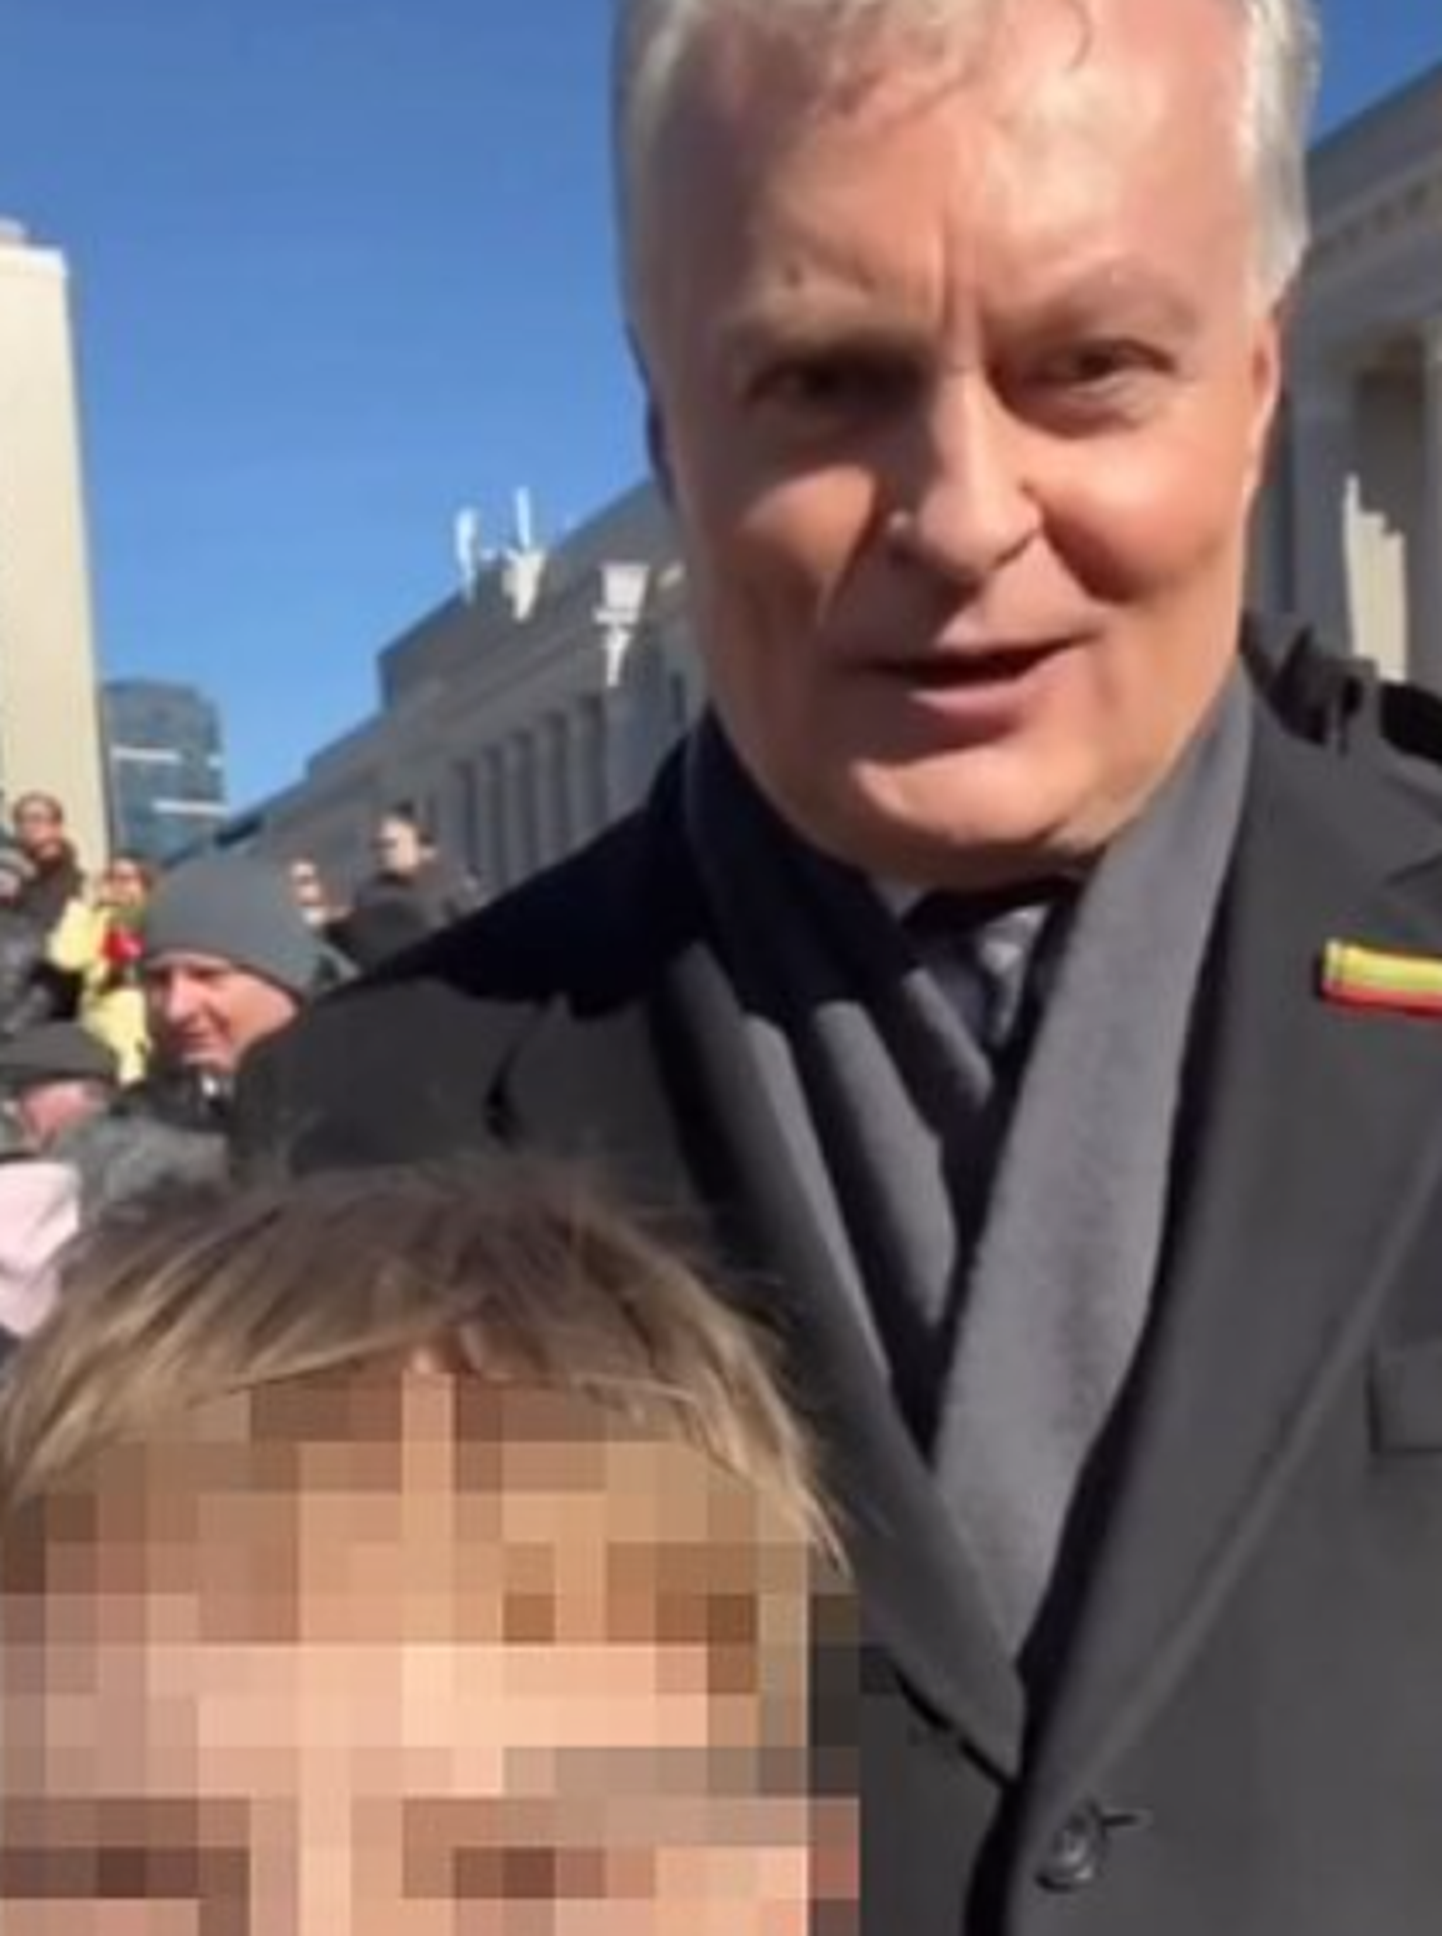 Lietuvas prezidents Nausēda pēc incidenta ar baltkrievu videoblogeri neplāno noraidīt lūgumus fotografēties.